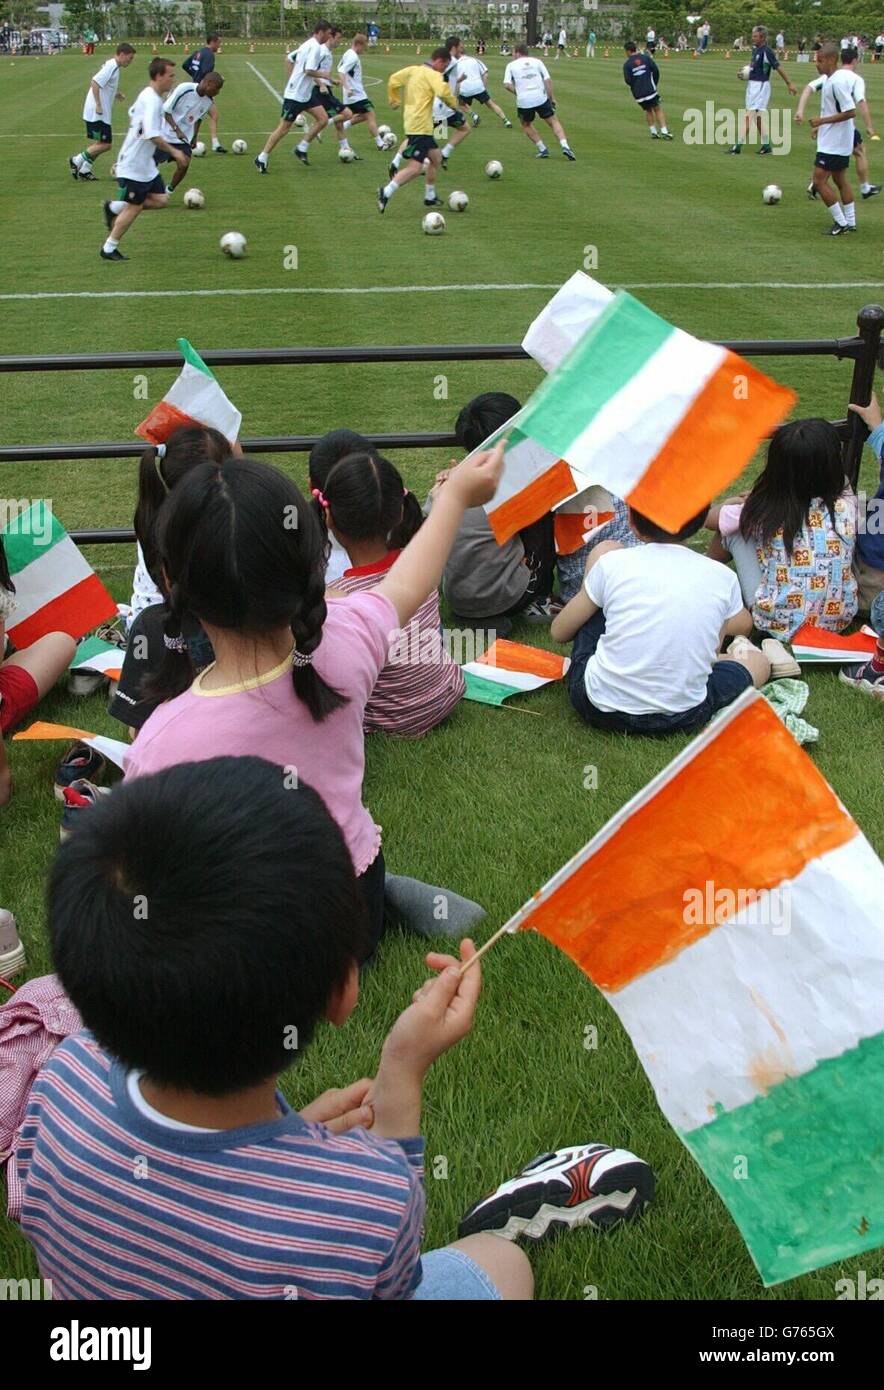 Einheimische Kinder unterstützen die irische Mannschaft beim Training im Izumo Sports Park, Izumo, Japan. Die erste WM-Einspielung des Teams findet am 1. Juni in Niigata gegen Kamerun statt. Stockfoto